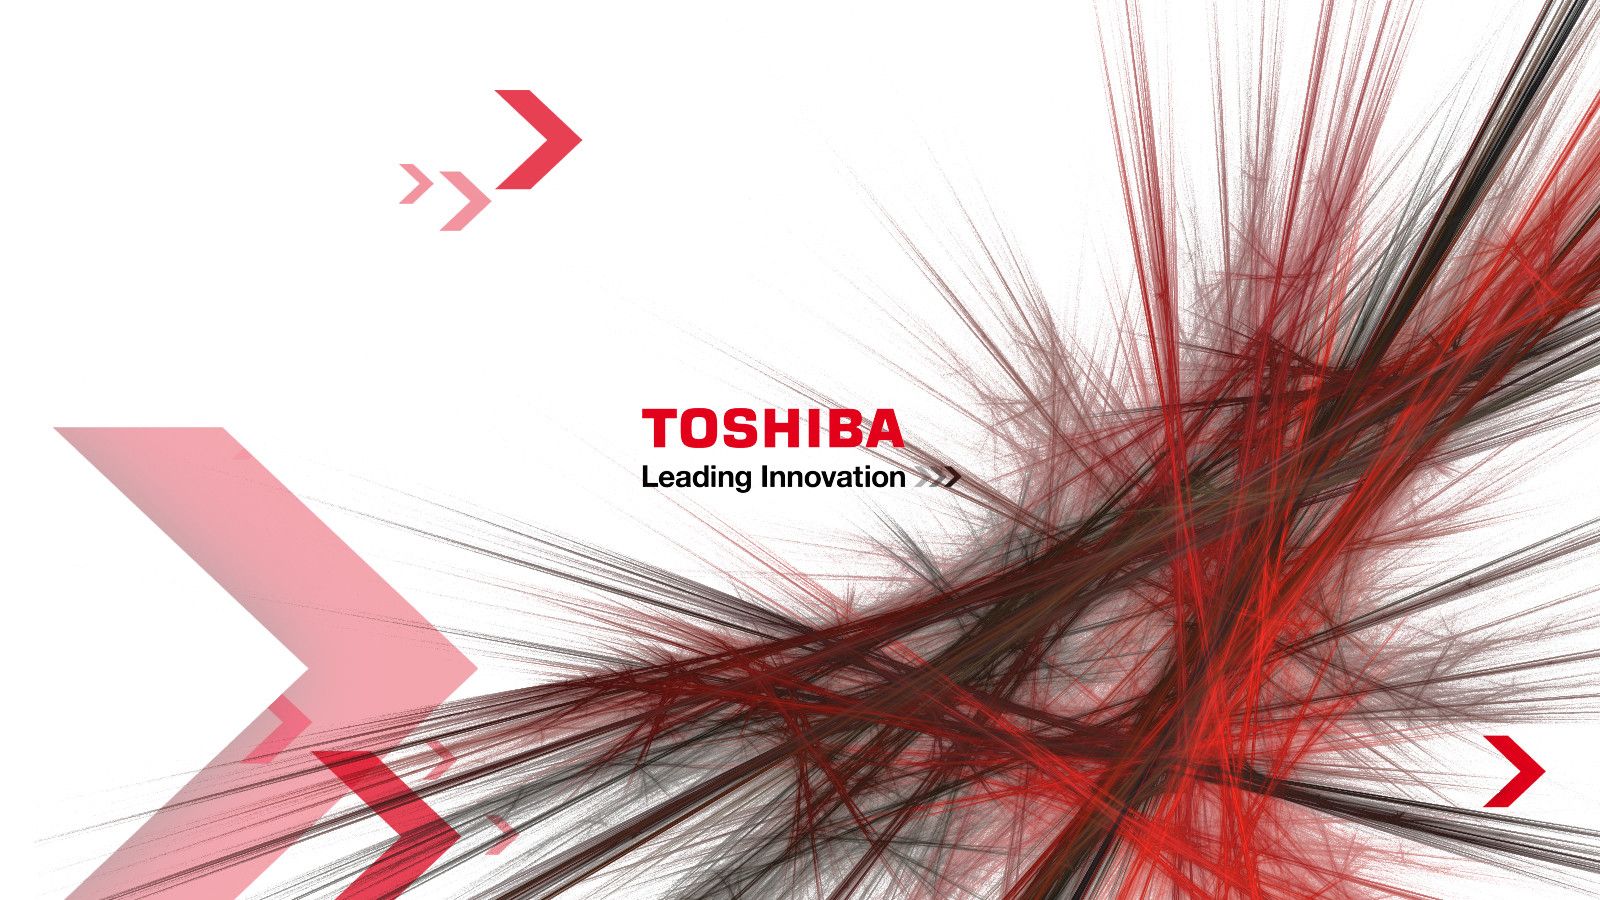 Toshiba Wallpapers